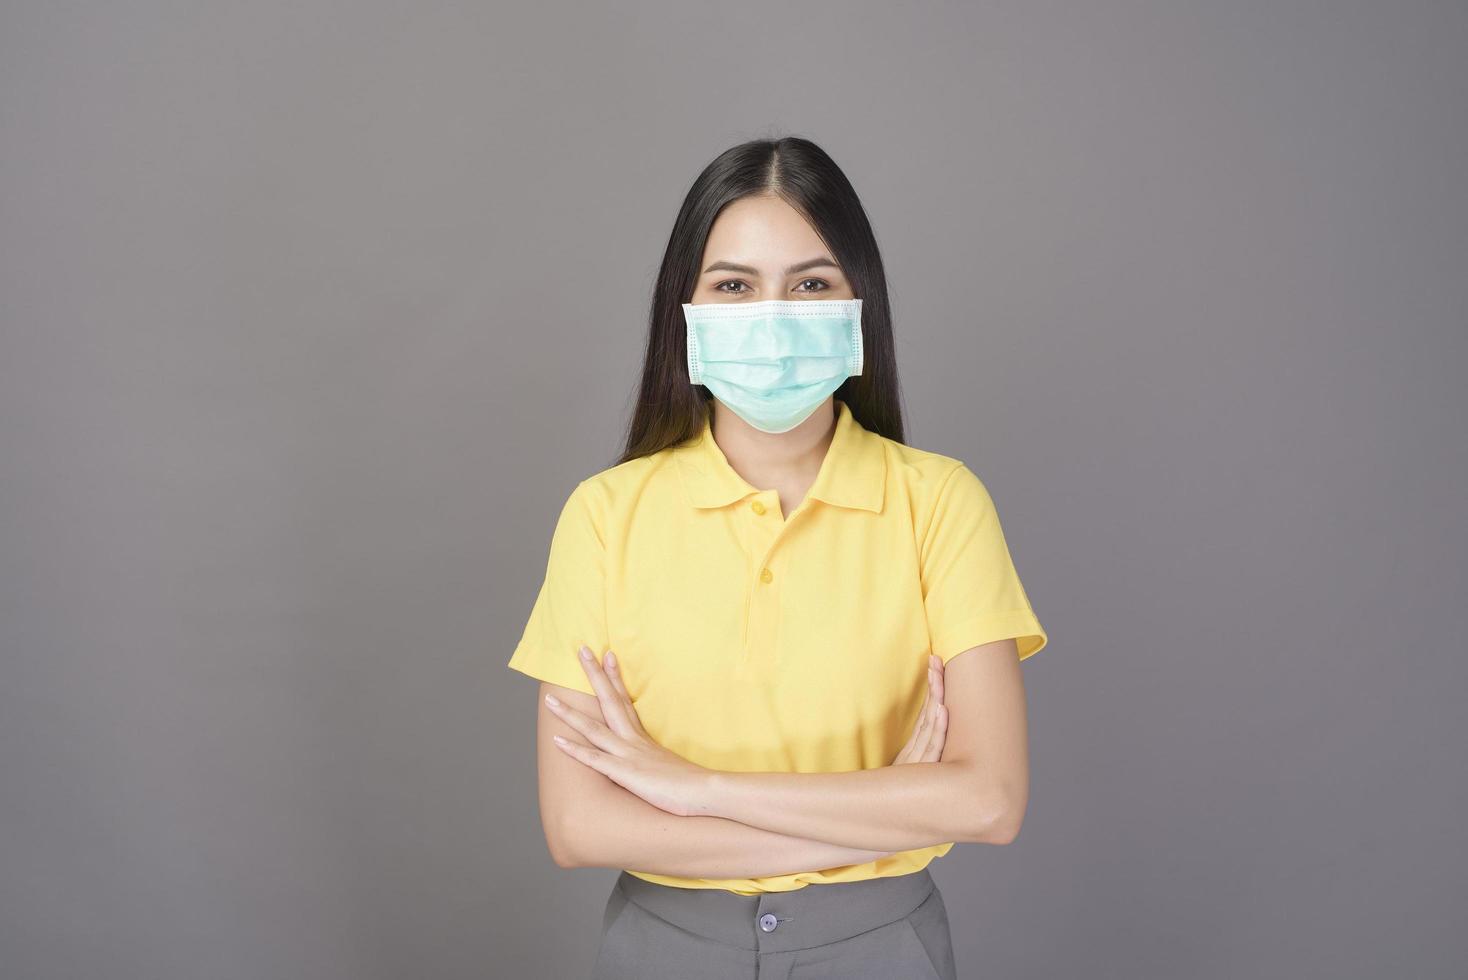 jovem confiante de camisa amarela está usando máscara cirúrgica sobre estúdio de fundo cinza foto